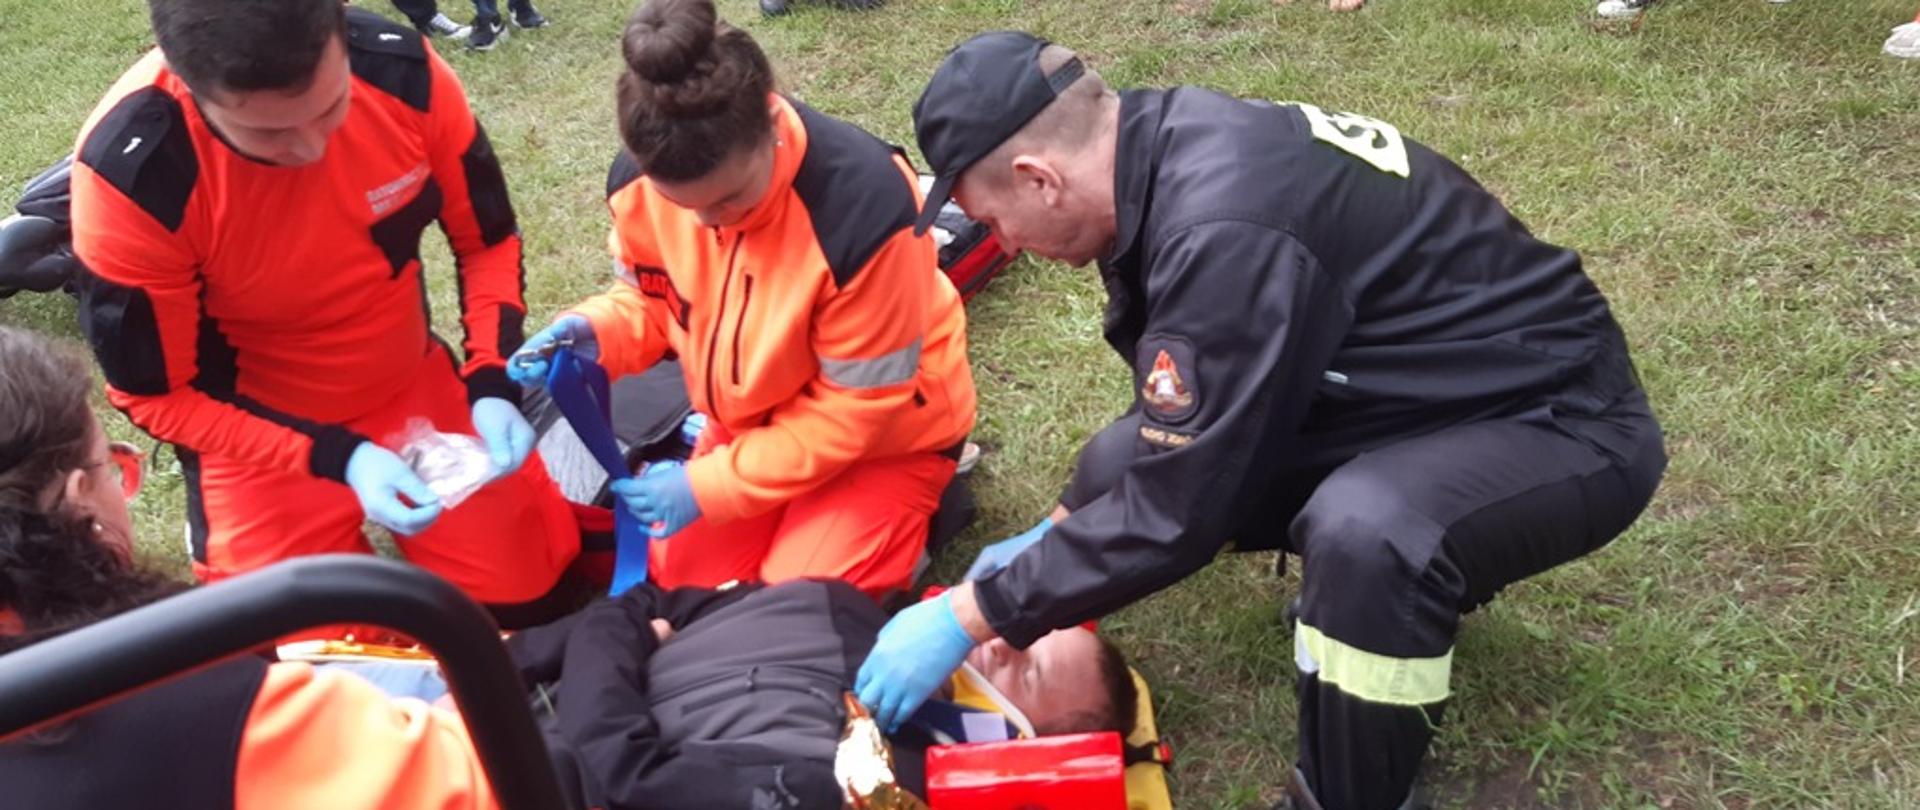 Na zdjęciu strażak oraz ratownicy medyczni udzielający pomocy przedmedycznej osobie poszkodowanej w ramach ćwiczeń.W tle obserwatorzy.